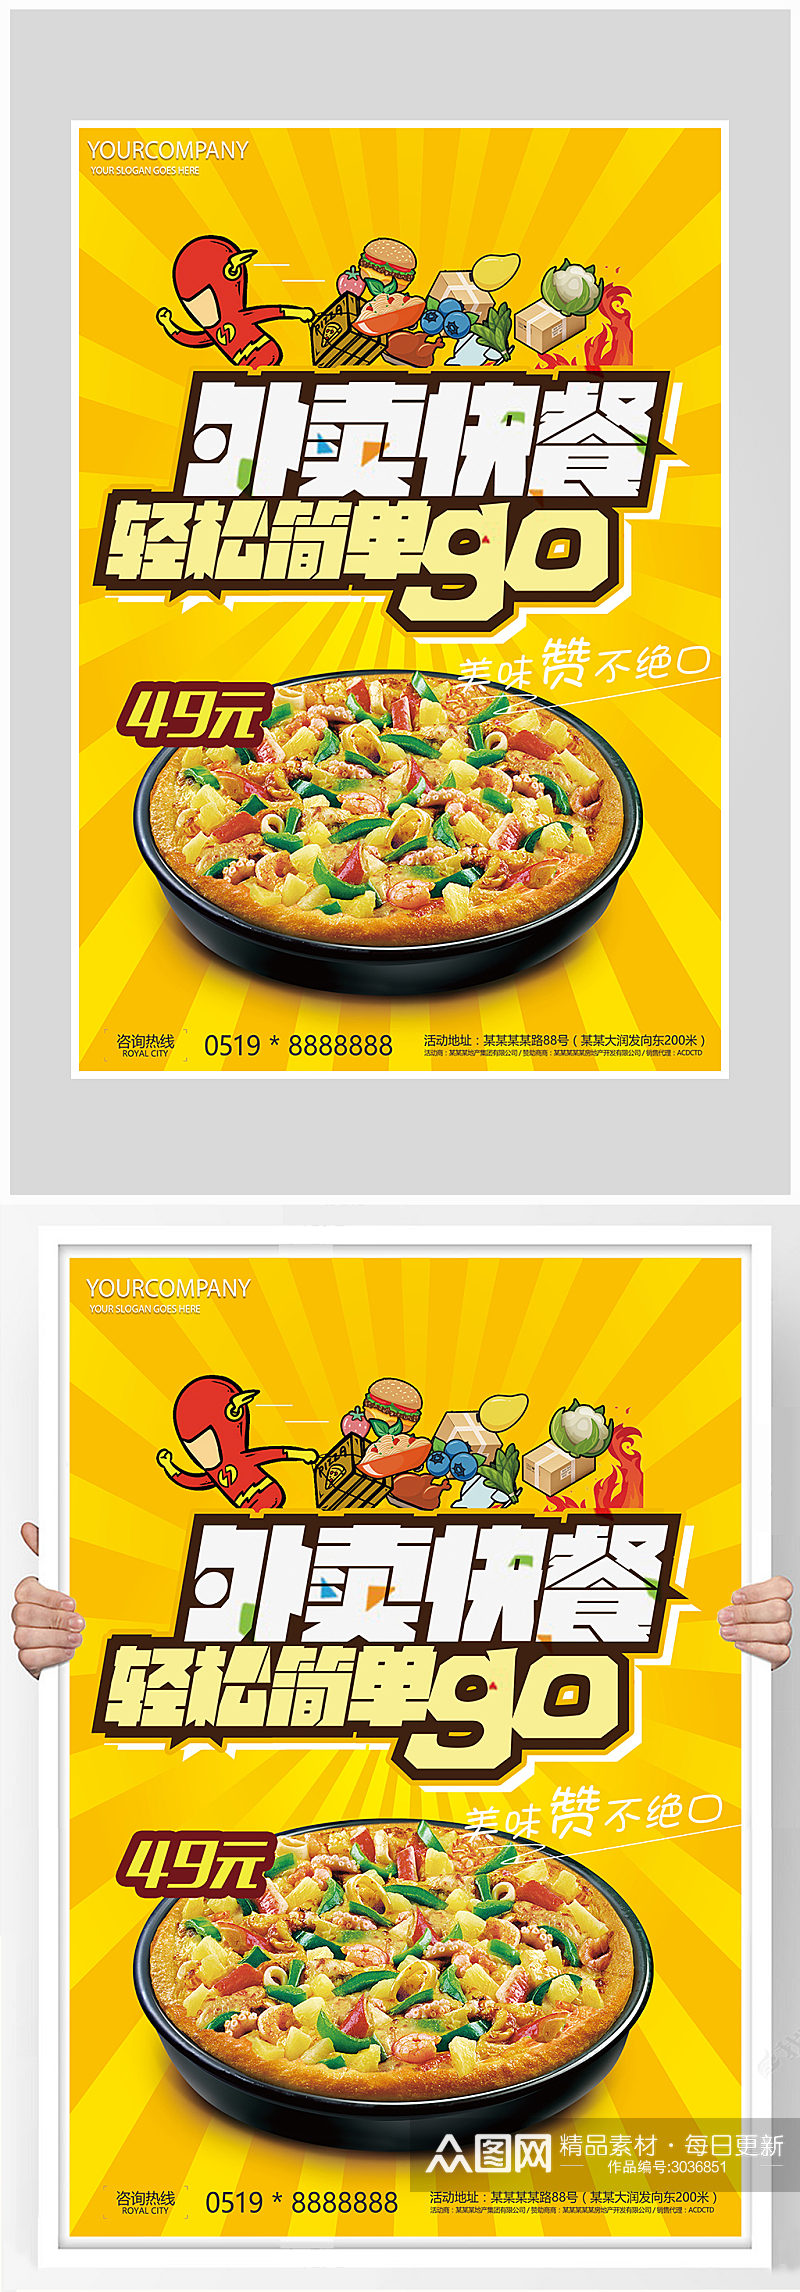 创意质感外卖订餐海报设计素材